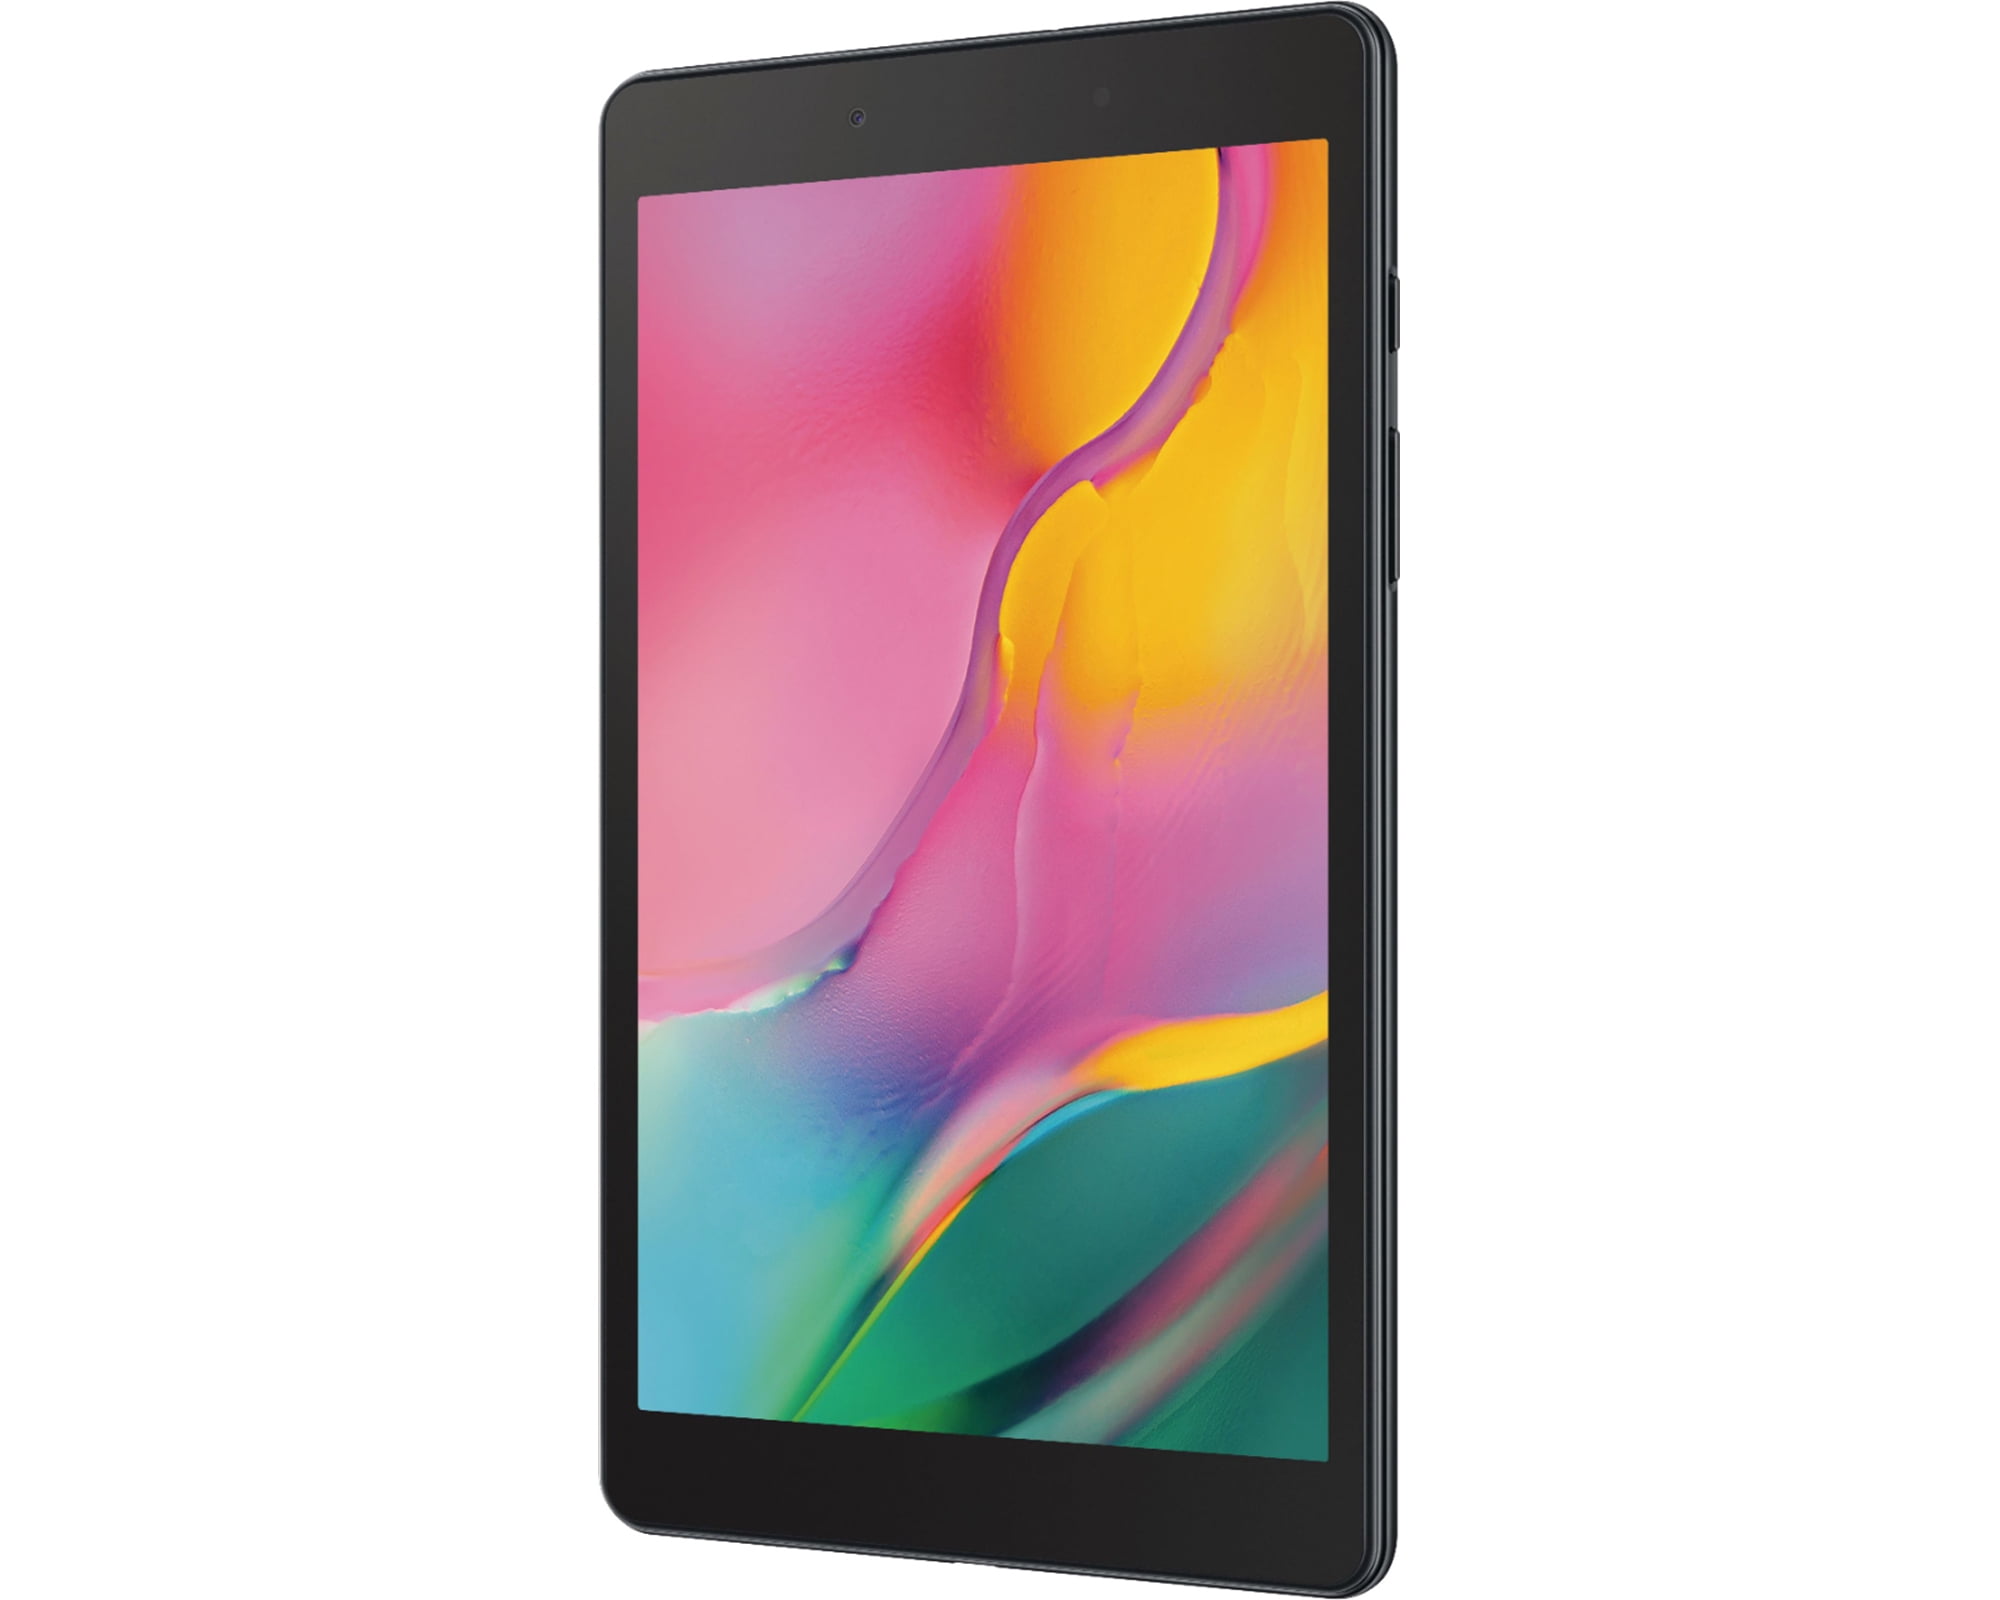 Samsung Galaxy Tab A 8 0 32 Gb Wifi Android 9 0 Tablet Black Sm T290nzkaxar Walmart Com